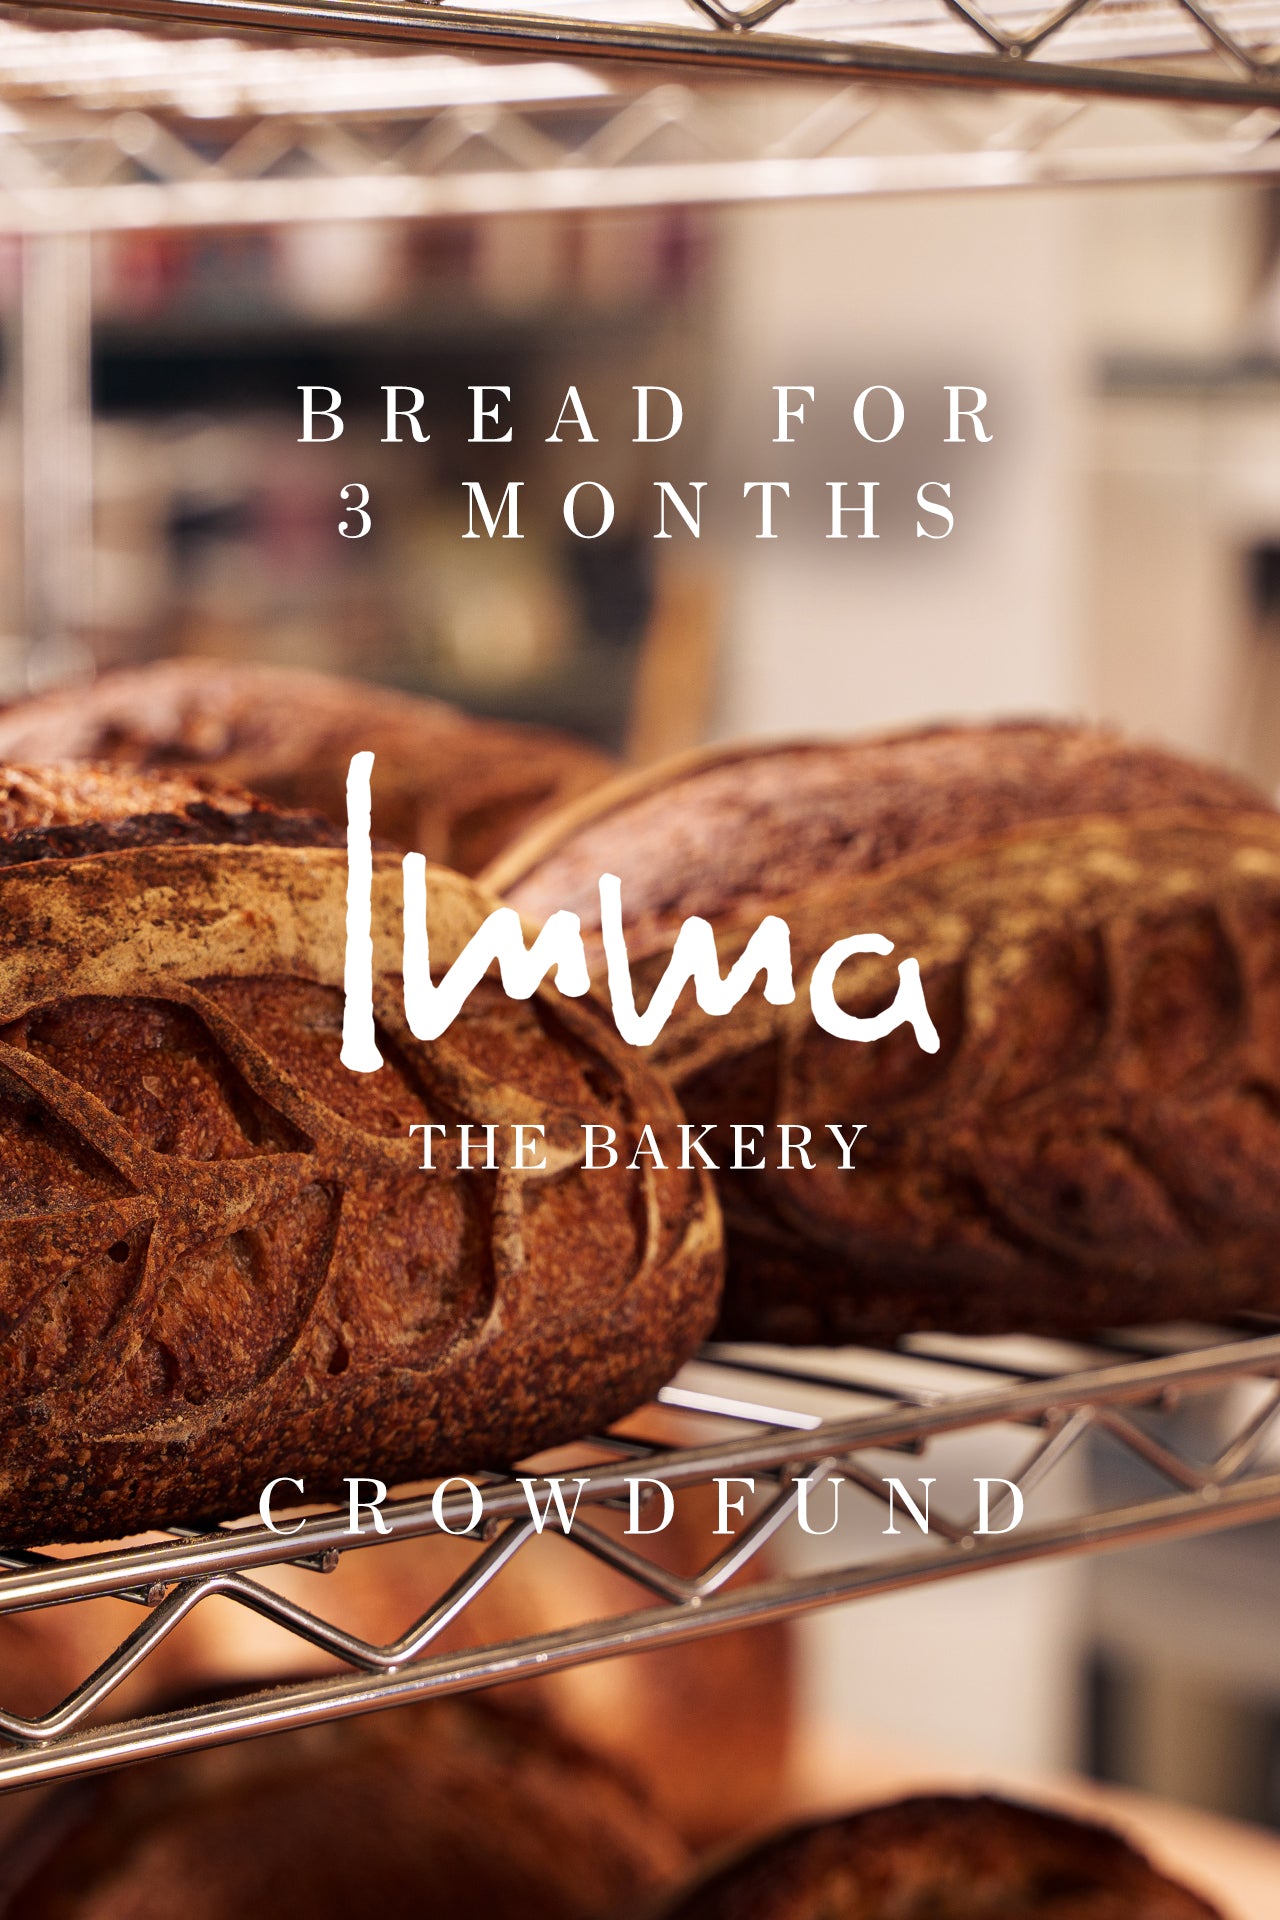 Crowdfund - Bread for 3 Months